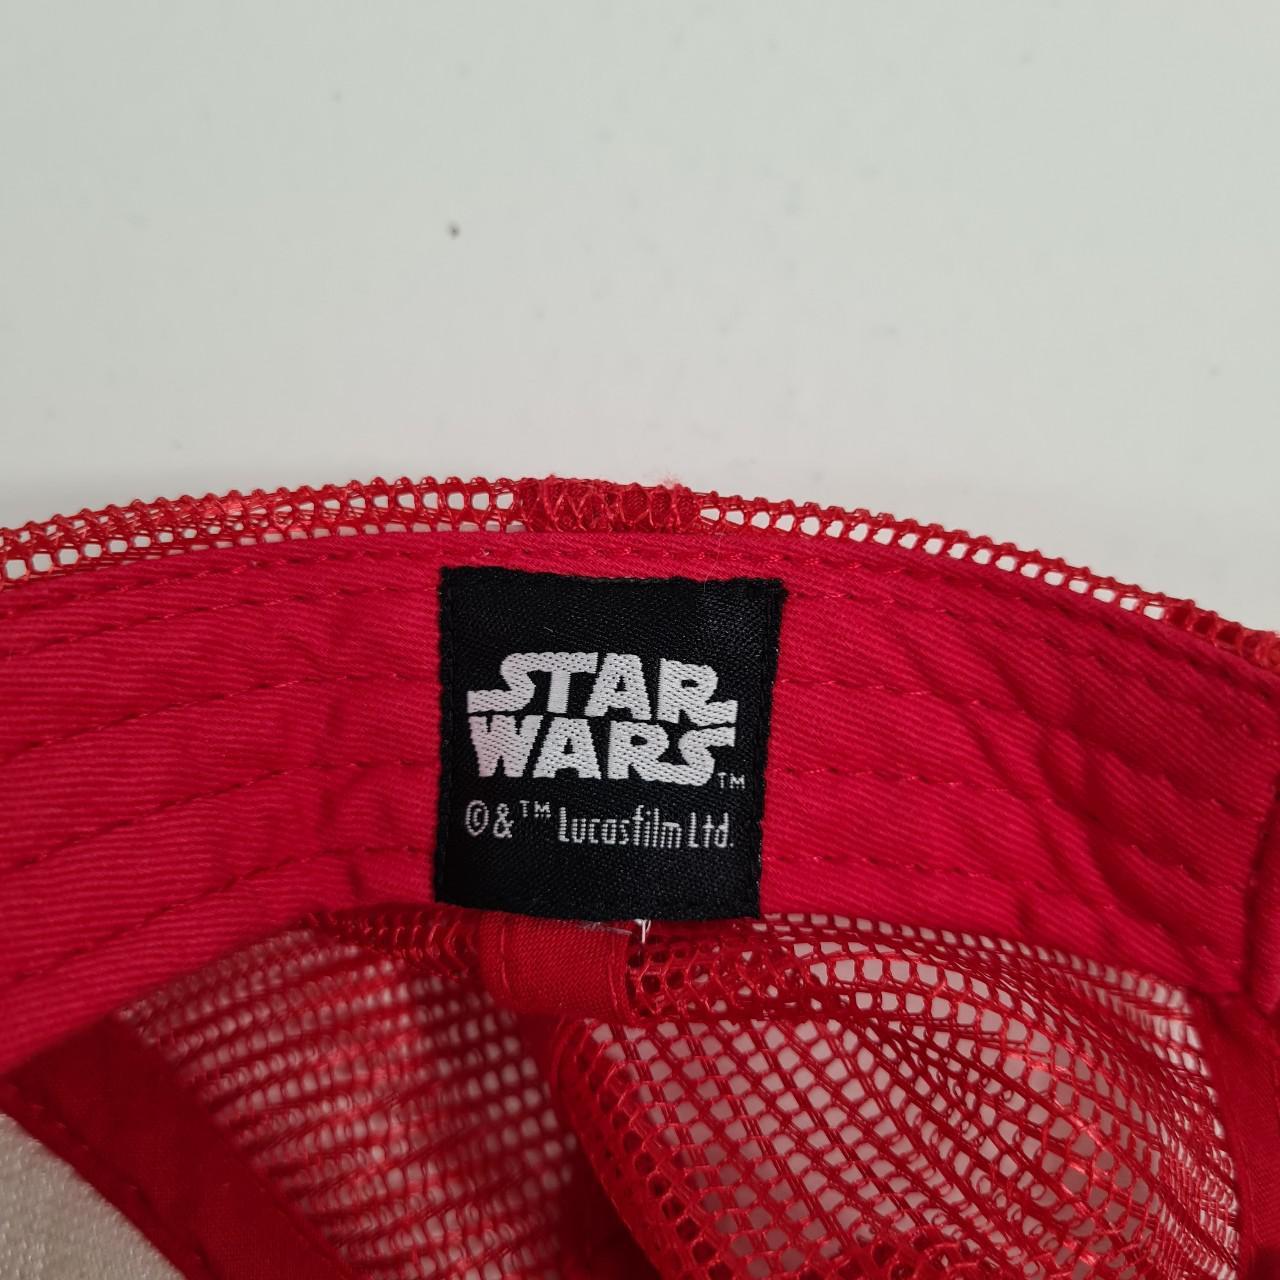 Product Image 4 - Star Wars Chewbacca Mesh Truker